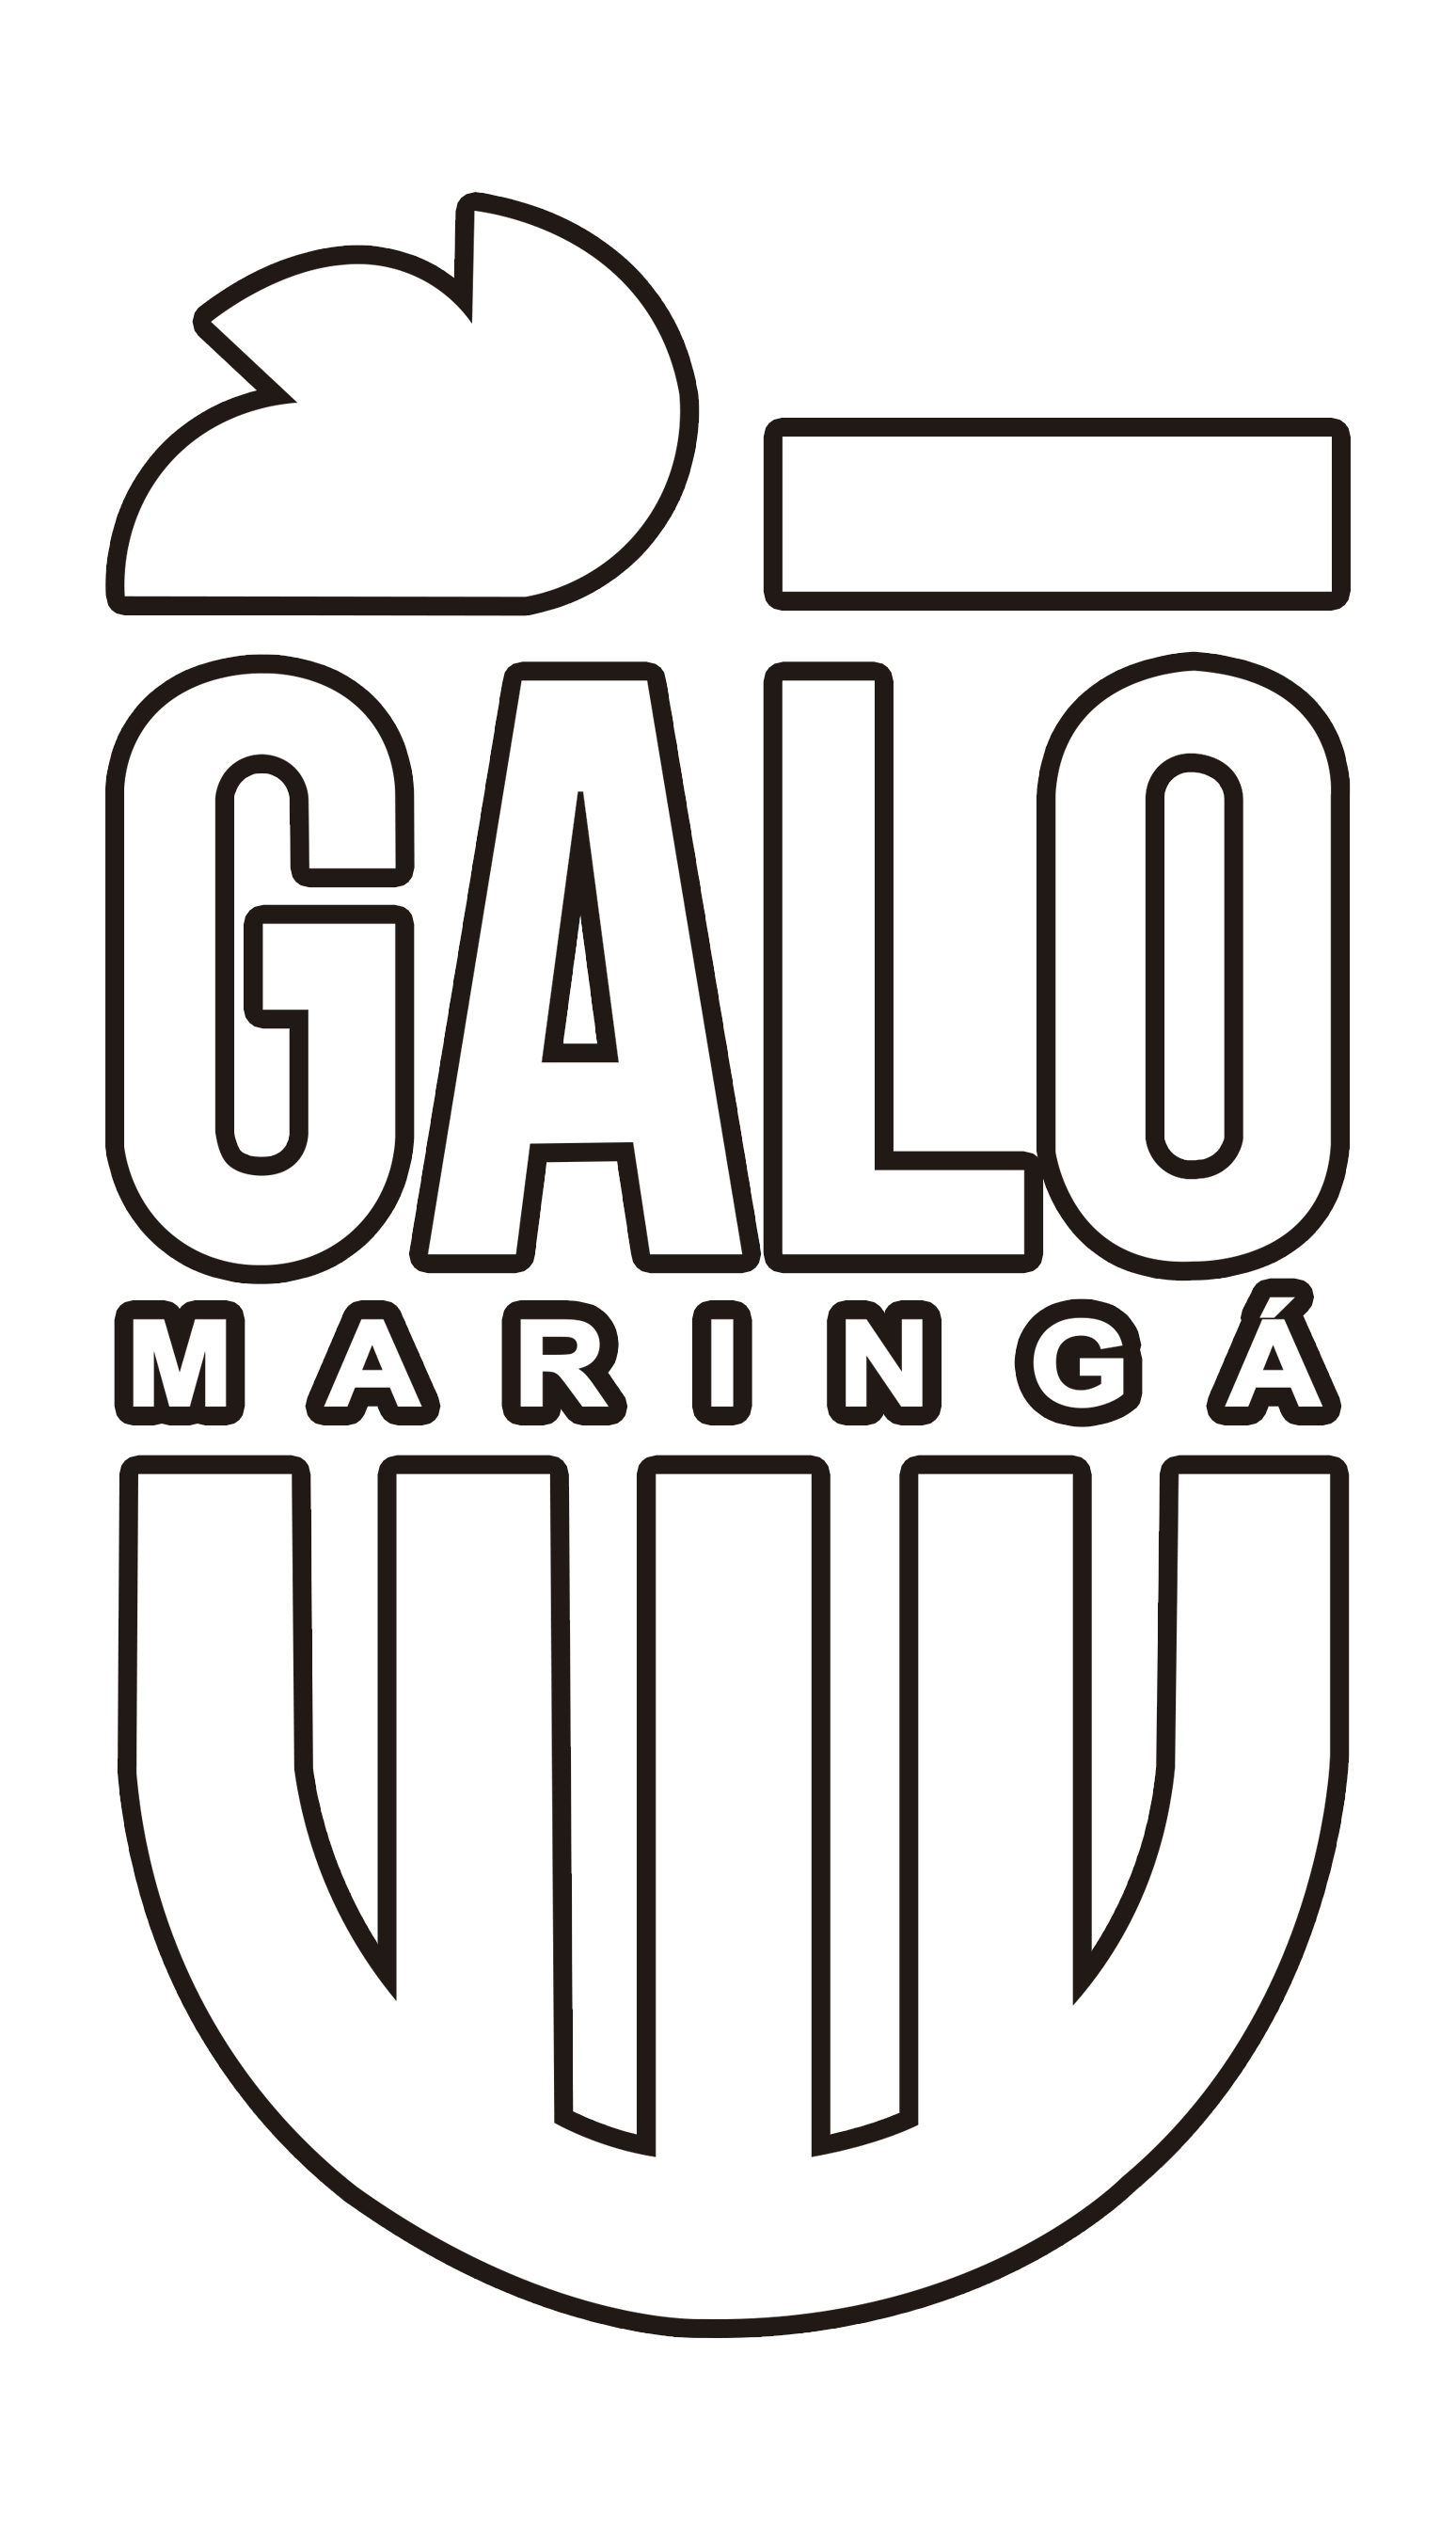 Galo Maringa